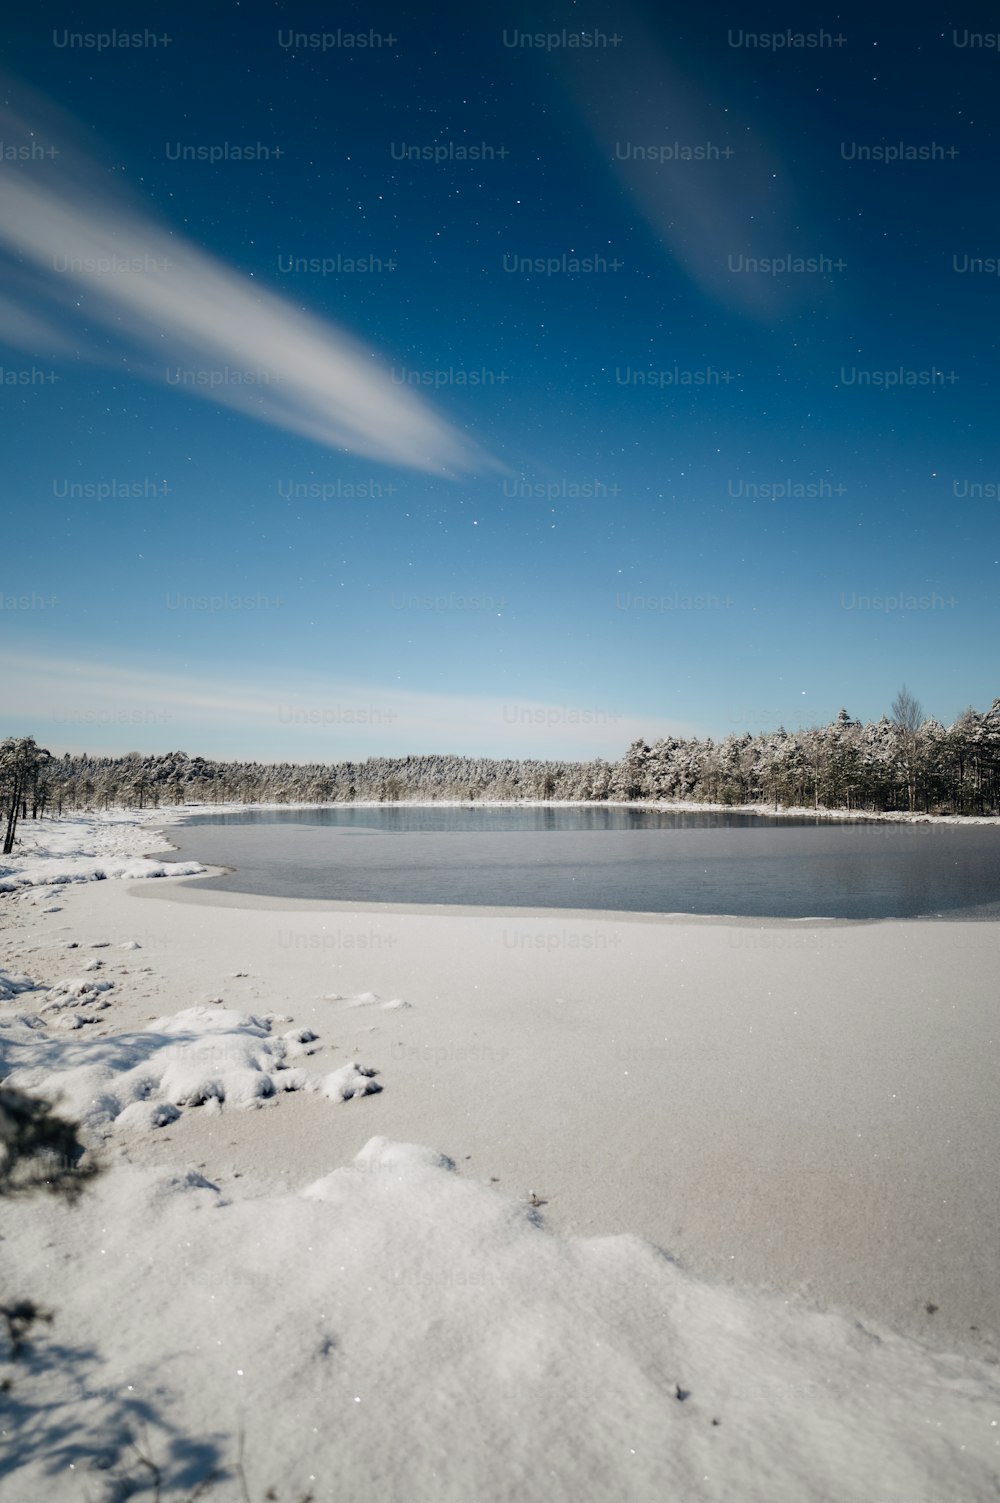 Ein See, umgeben von Schnee und Bäumen unter blauem Himmel